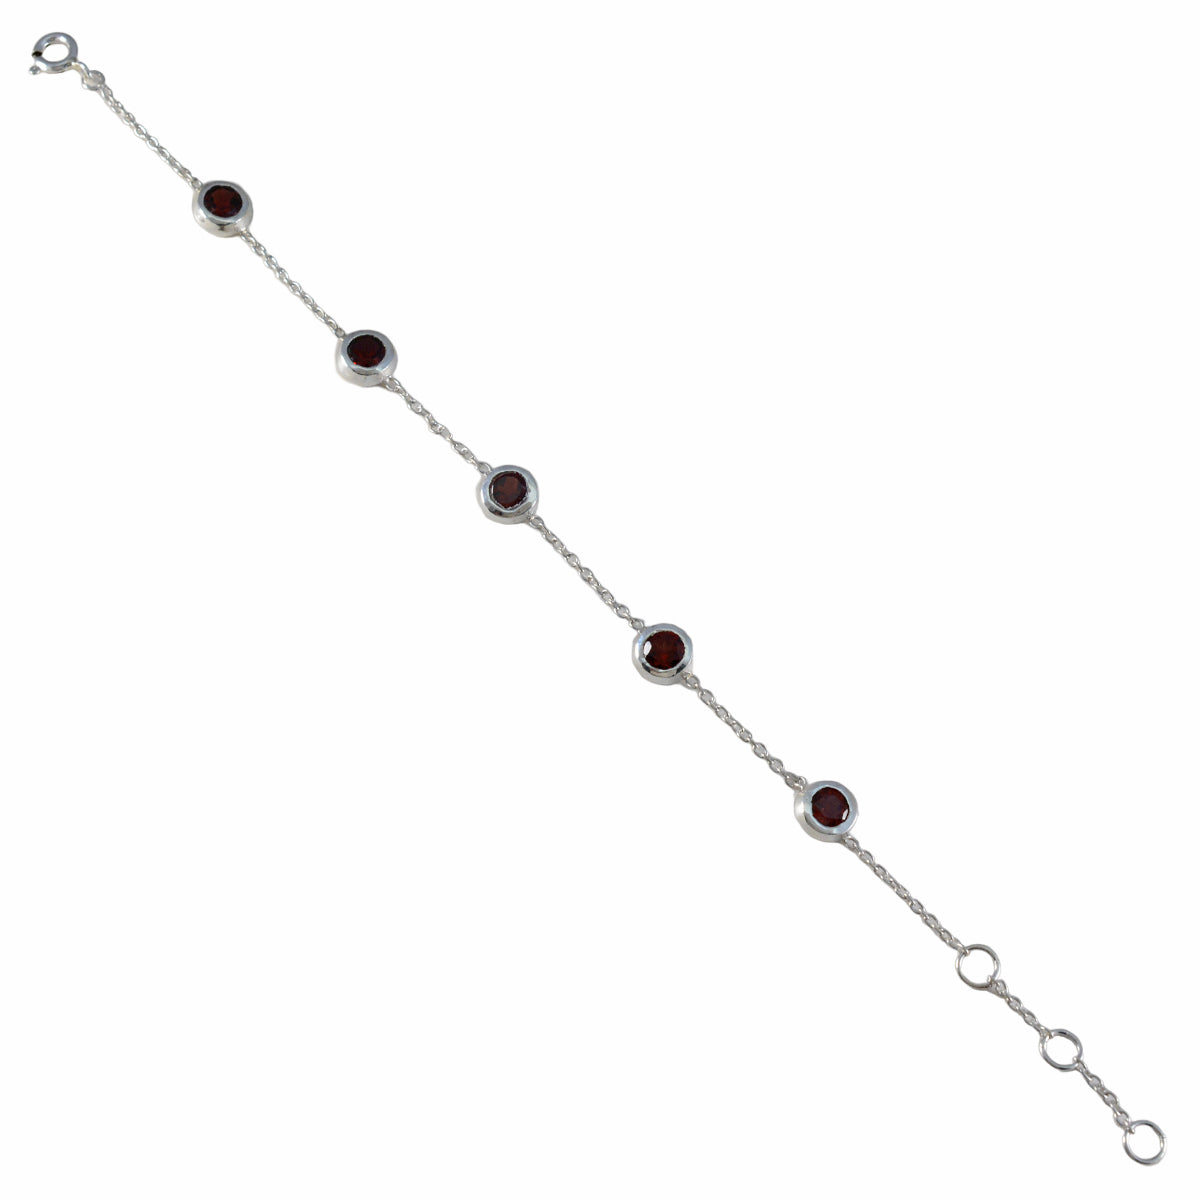 Riyo Wunderschönes 925er Sterlingsilber-Armband für Damen, Granat-Armband, Krappenfassung, Armband mit Karabinerhaken, Gliederarmband, Größe L, 15,2–21,6 cm.